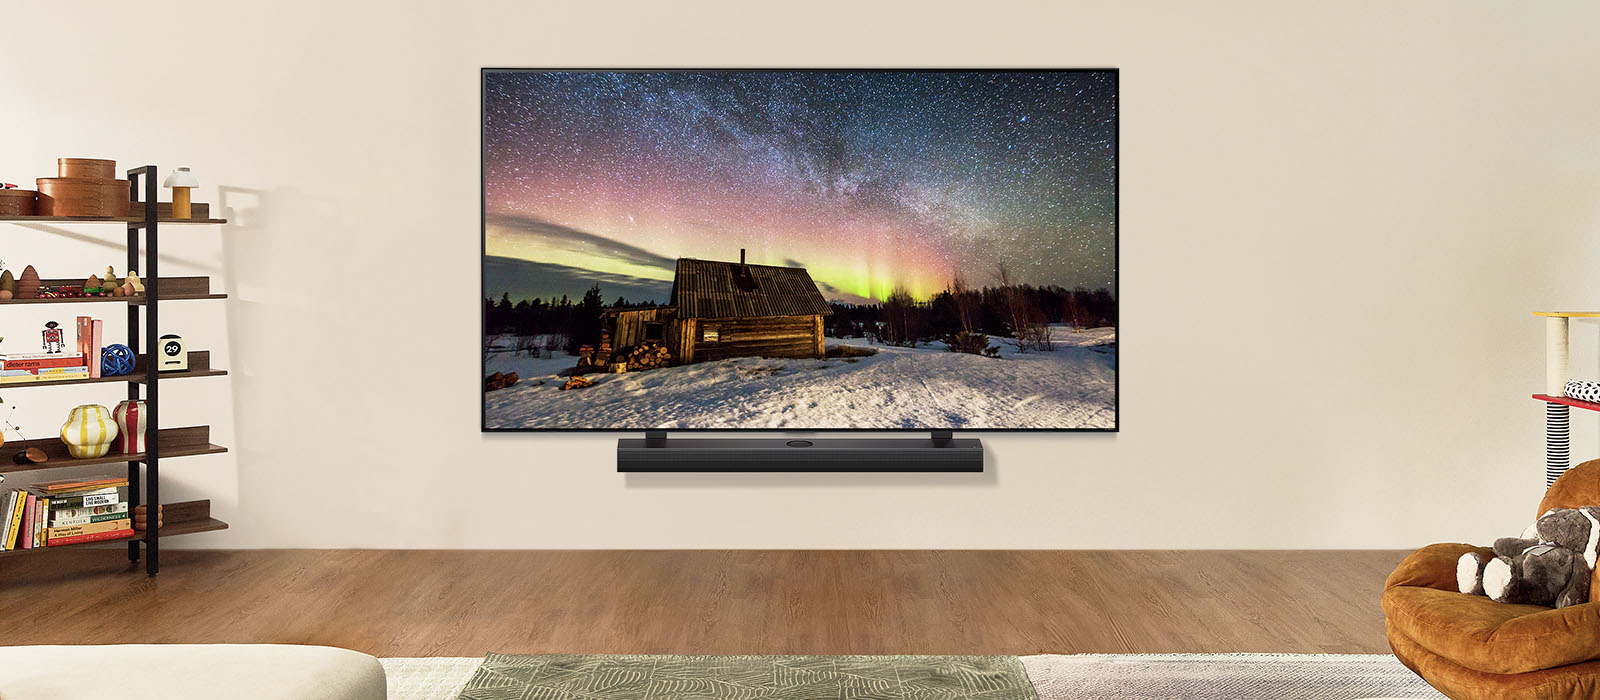 Televizor LG TV i kućno kino LG Soundbar u modernom stambenom prostoru danju. Slika polarne svjetlosti na zaslonu prikazuje se s idealnom razinom osvjetljenja.